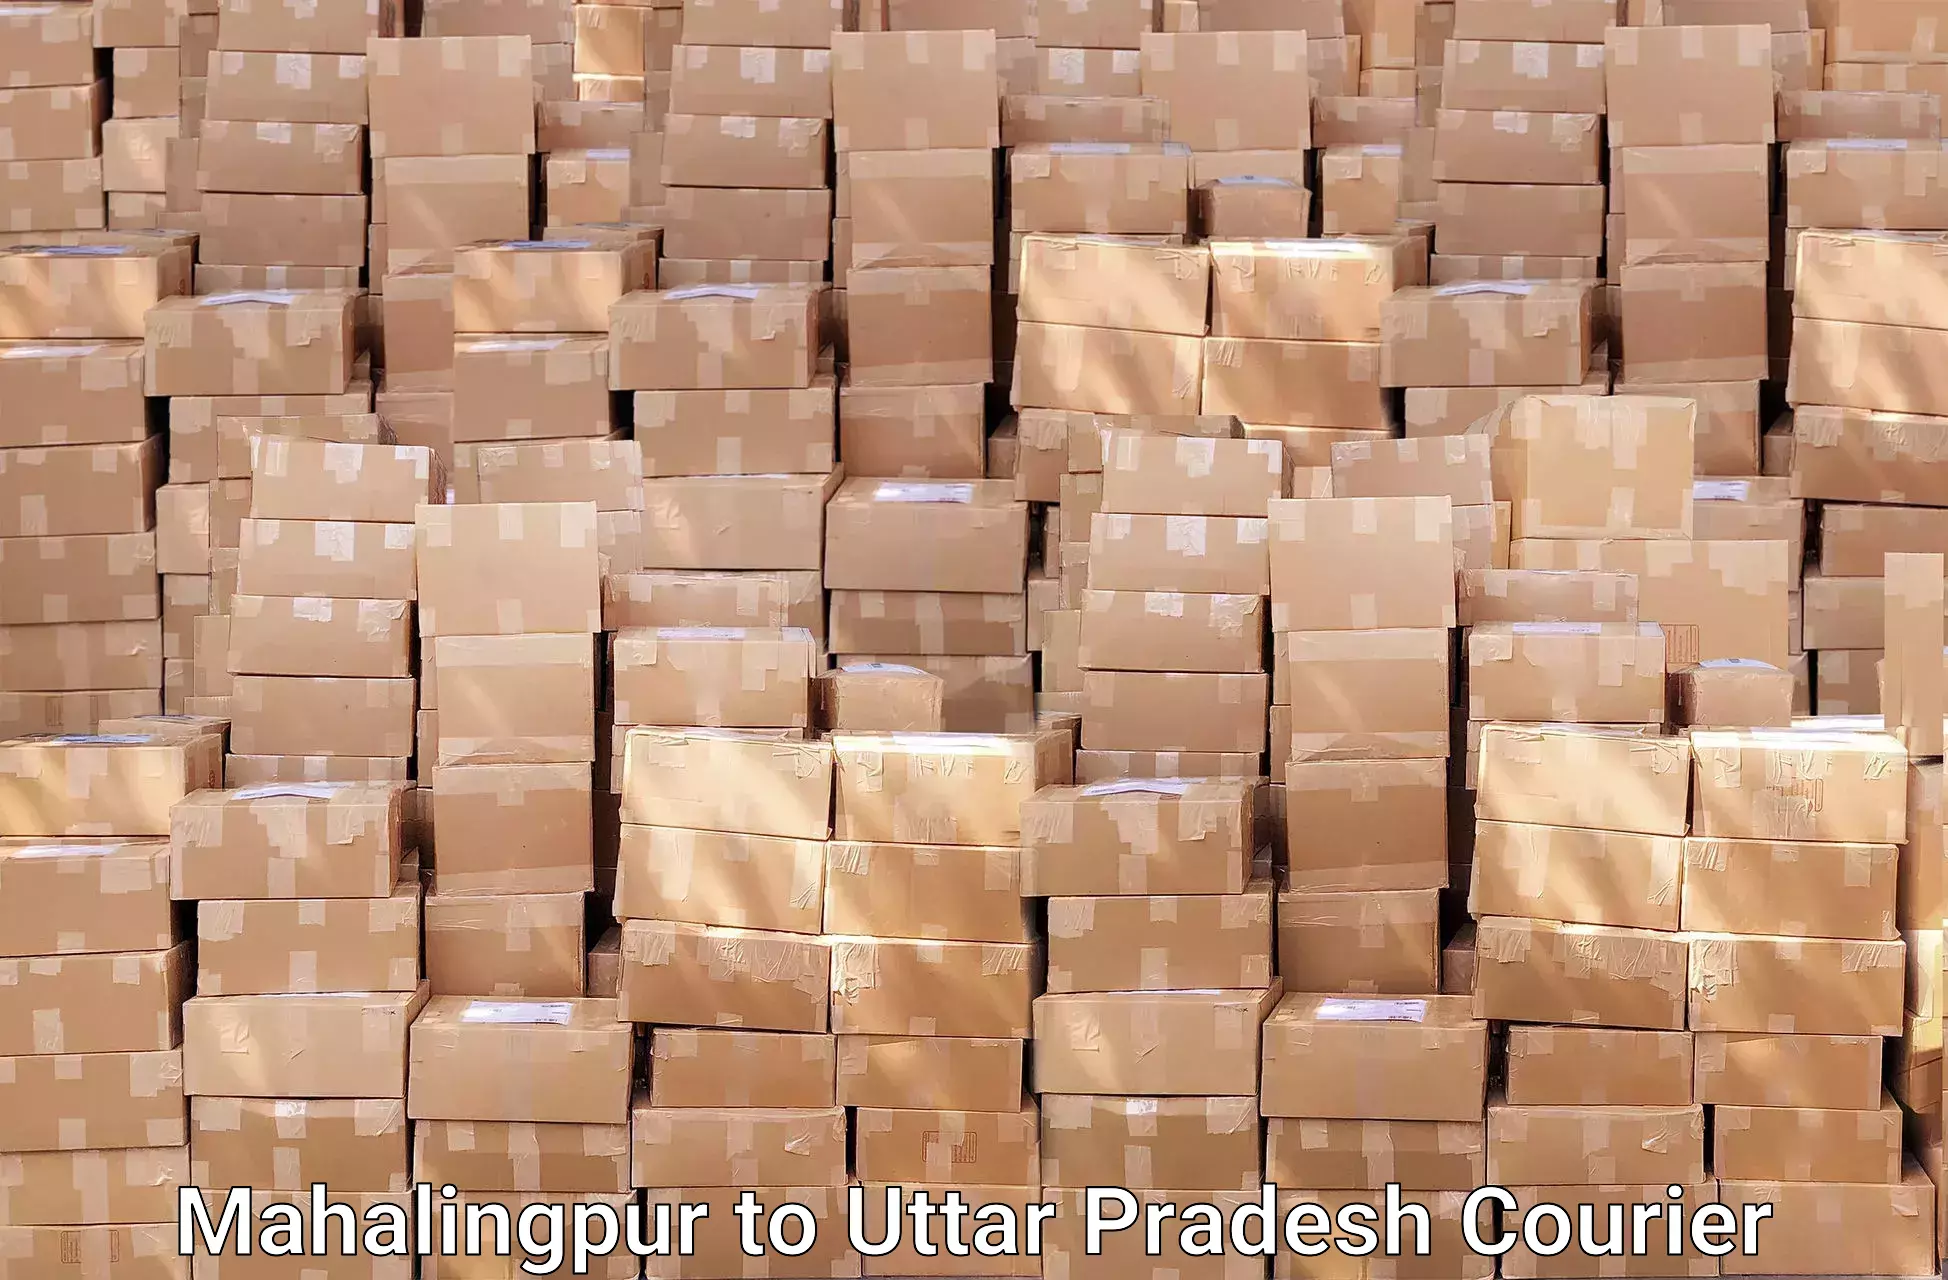 Seamless moving process Mahalingpur to Uttar Pradesh